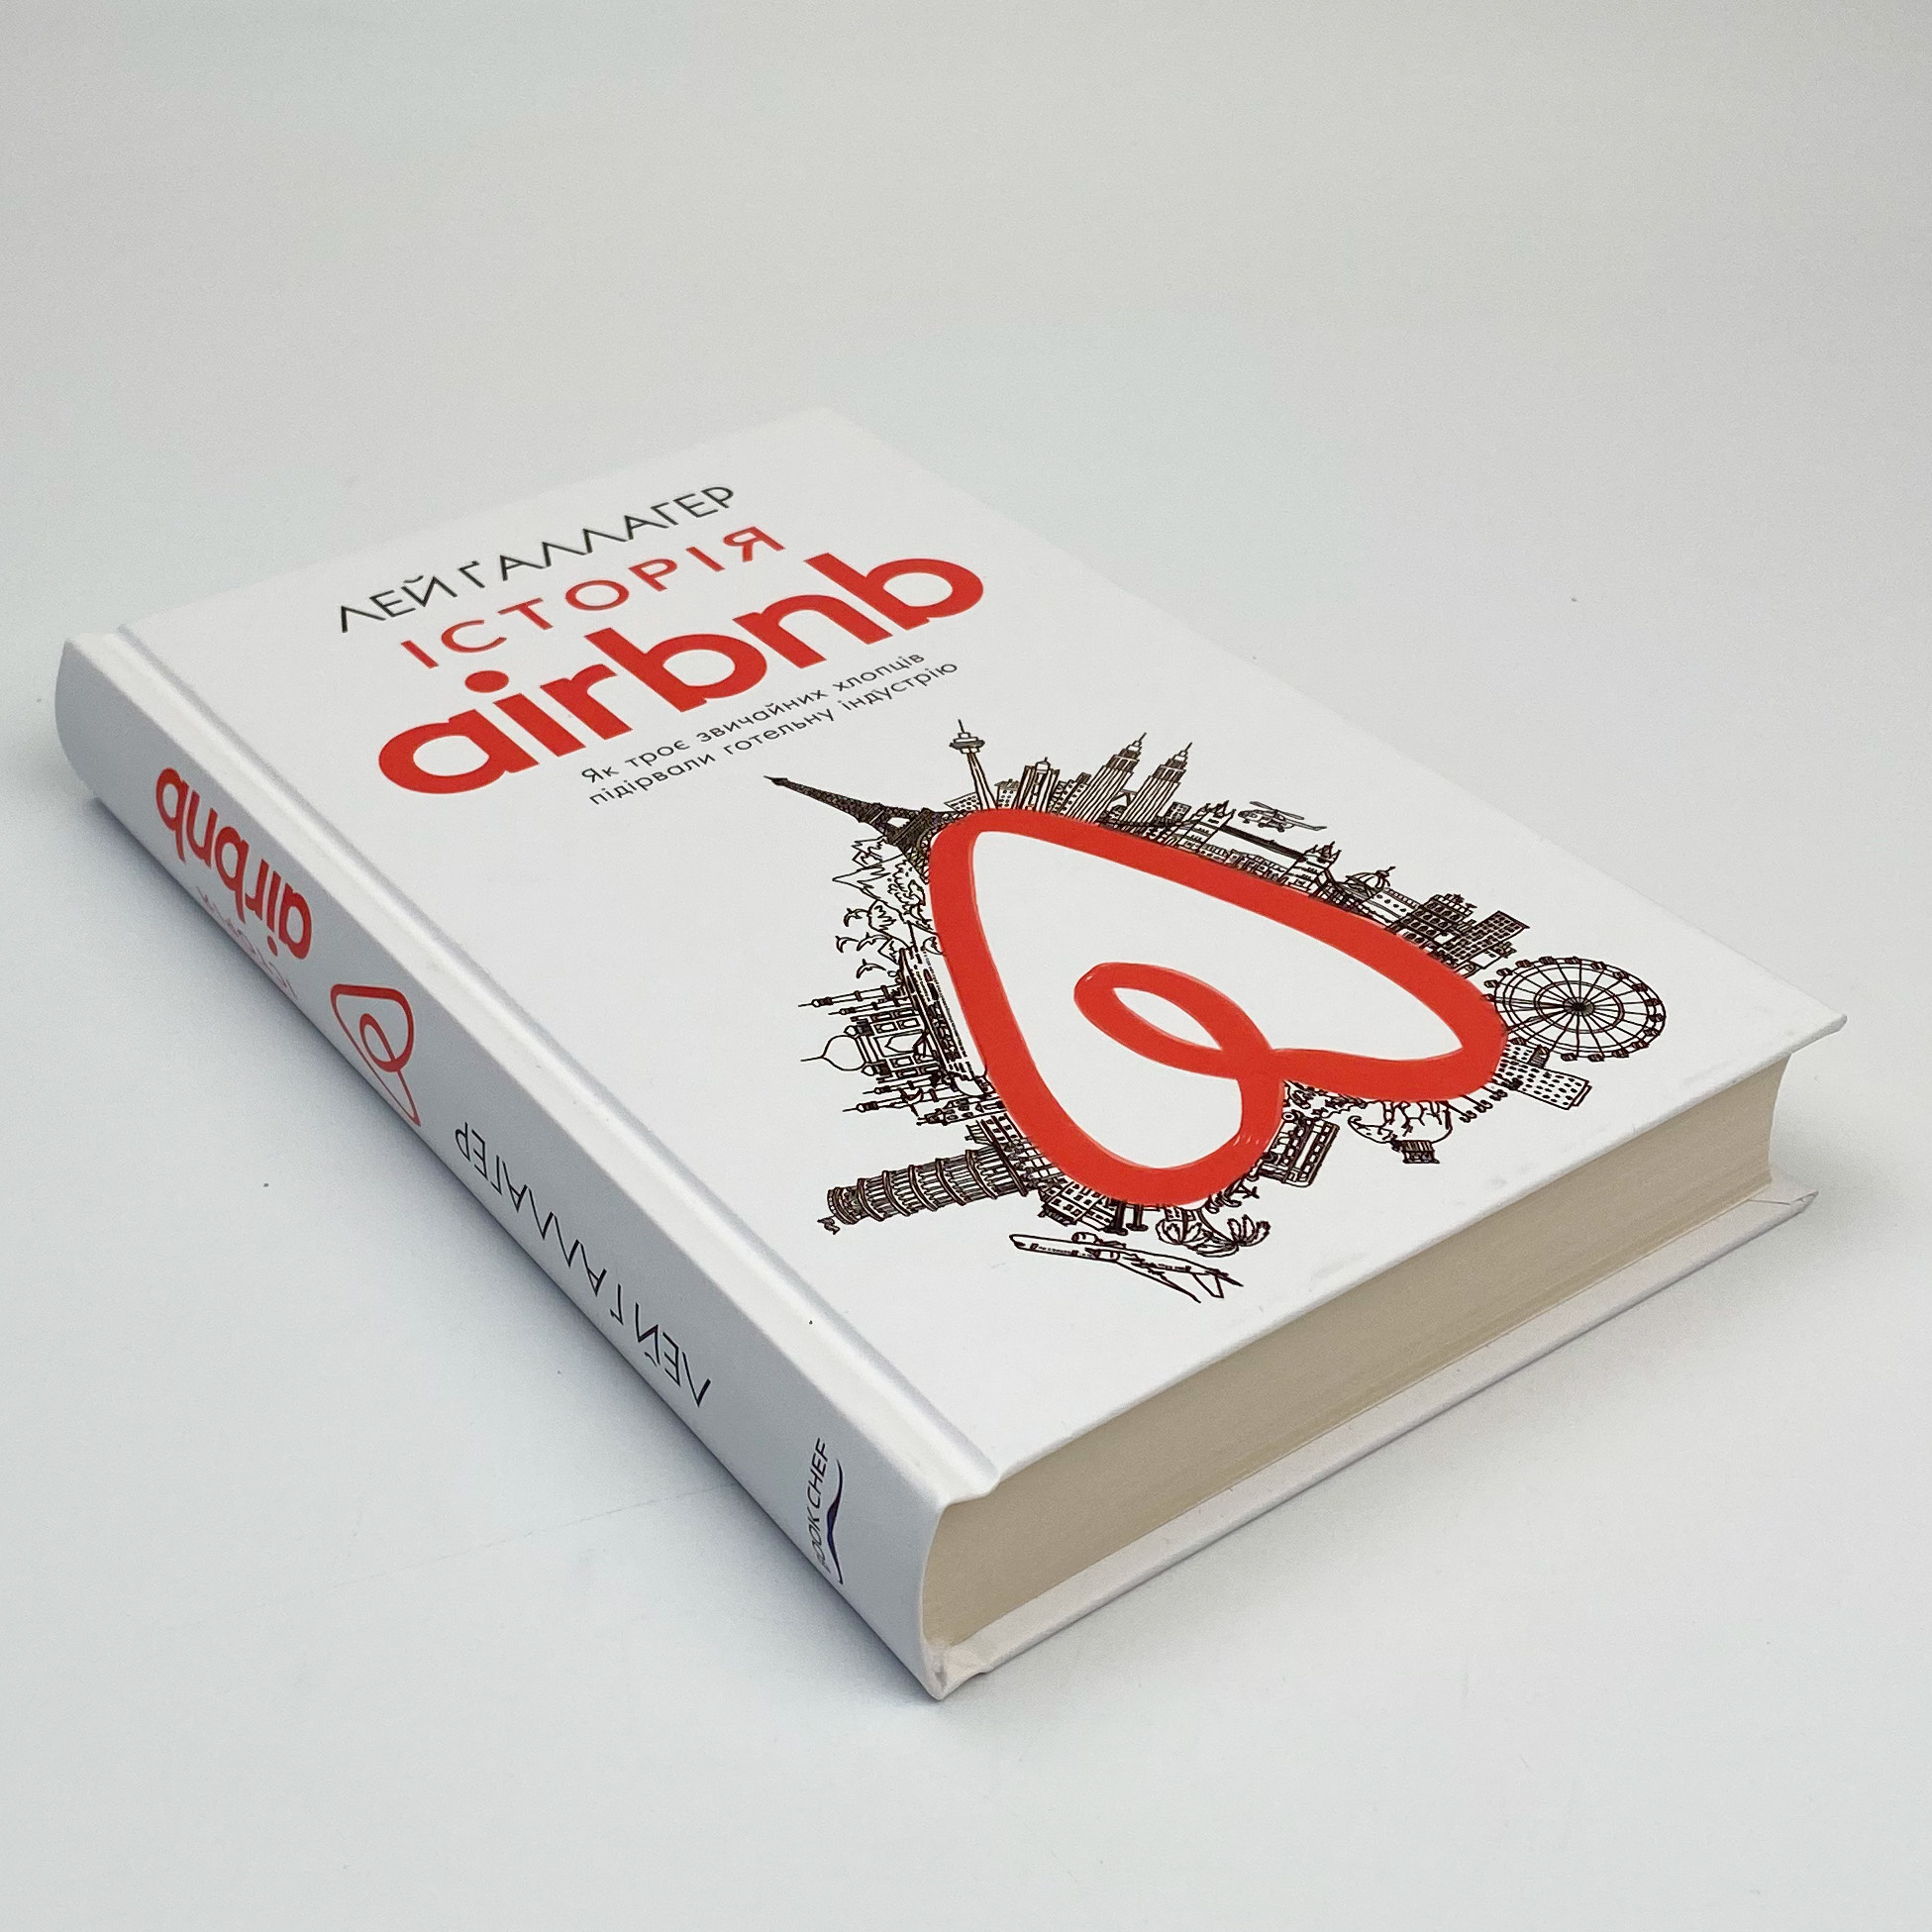 Історія Airbnb: Як троє звичайних хлопців підірвали готельну індустрію. Автор — Лі Галлахер. 